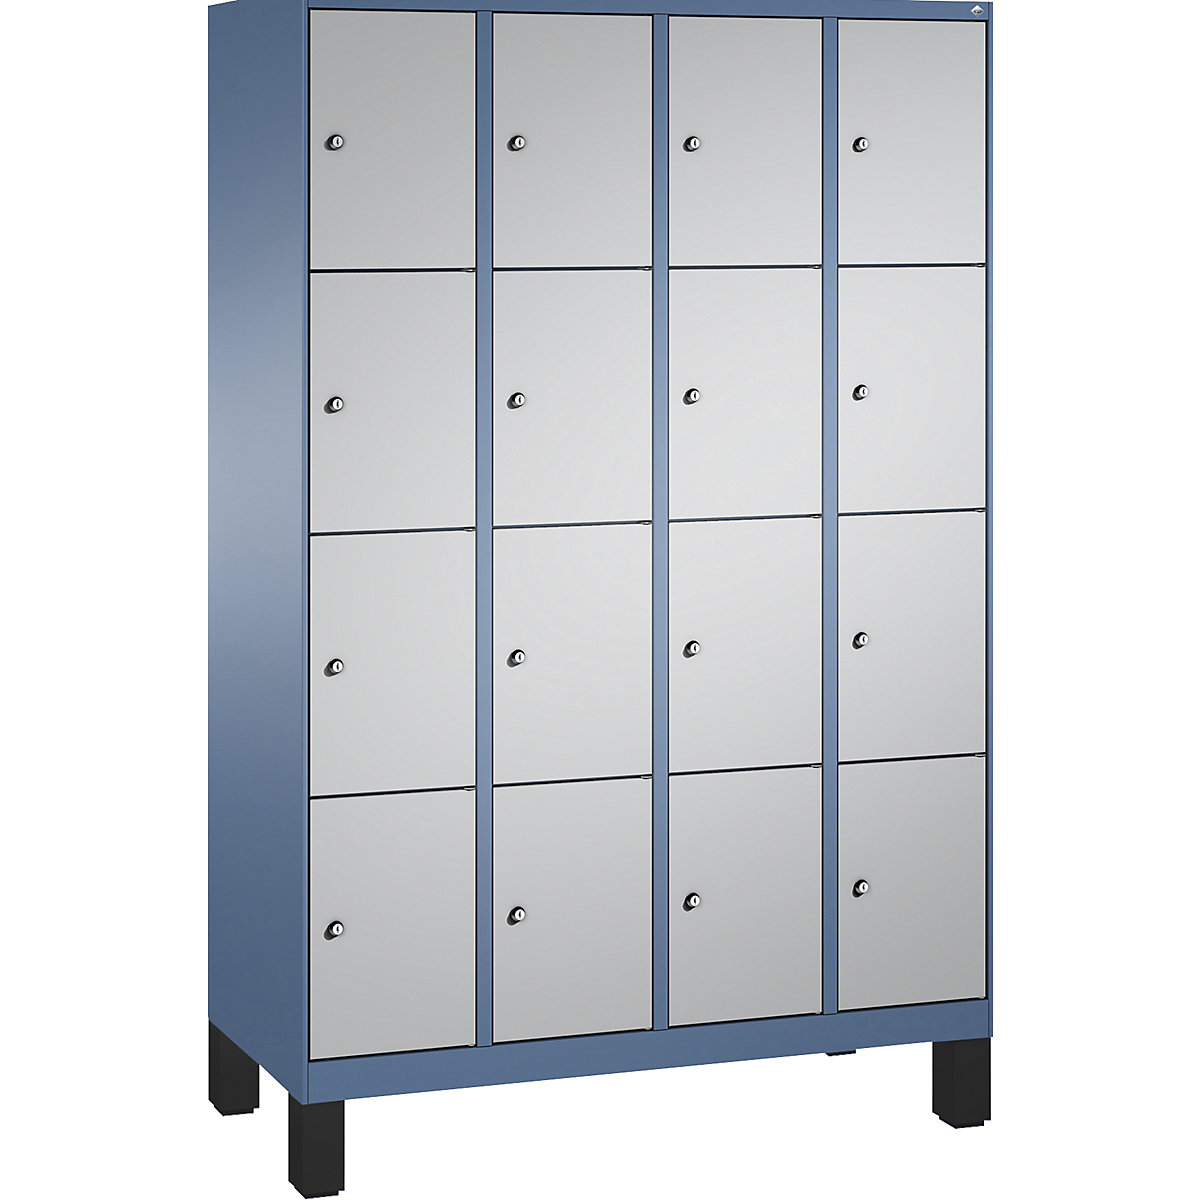 Armoire à casiers sur pieds EVOLO – C+P, 4 compartiments, 4 casiers chacun, largeur compartiments 300 mm, bleu distant / aluminium-13